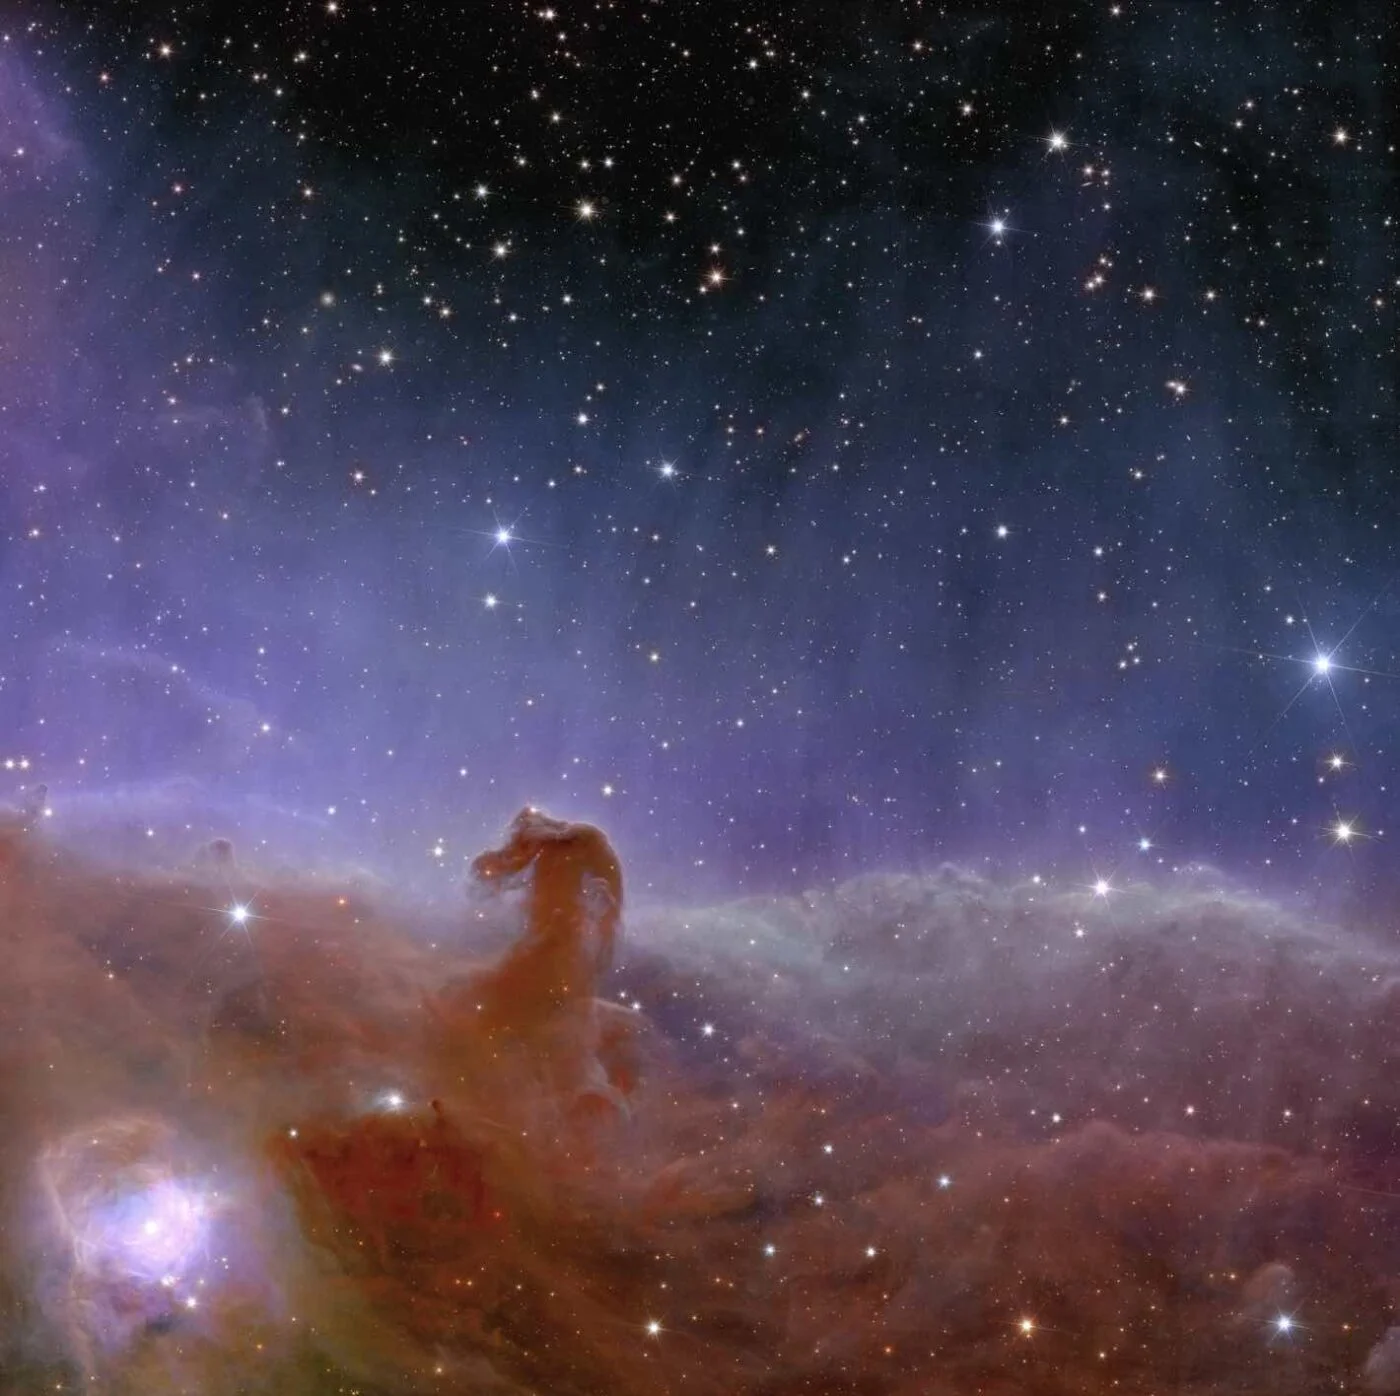 Imagens do telescópio euclid revelam a beleza cósmica